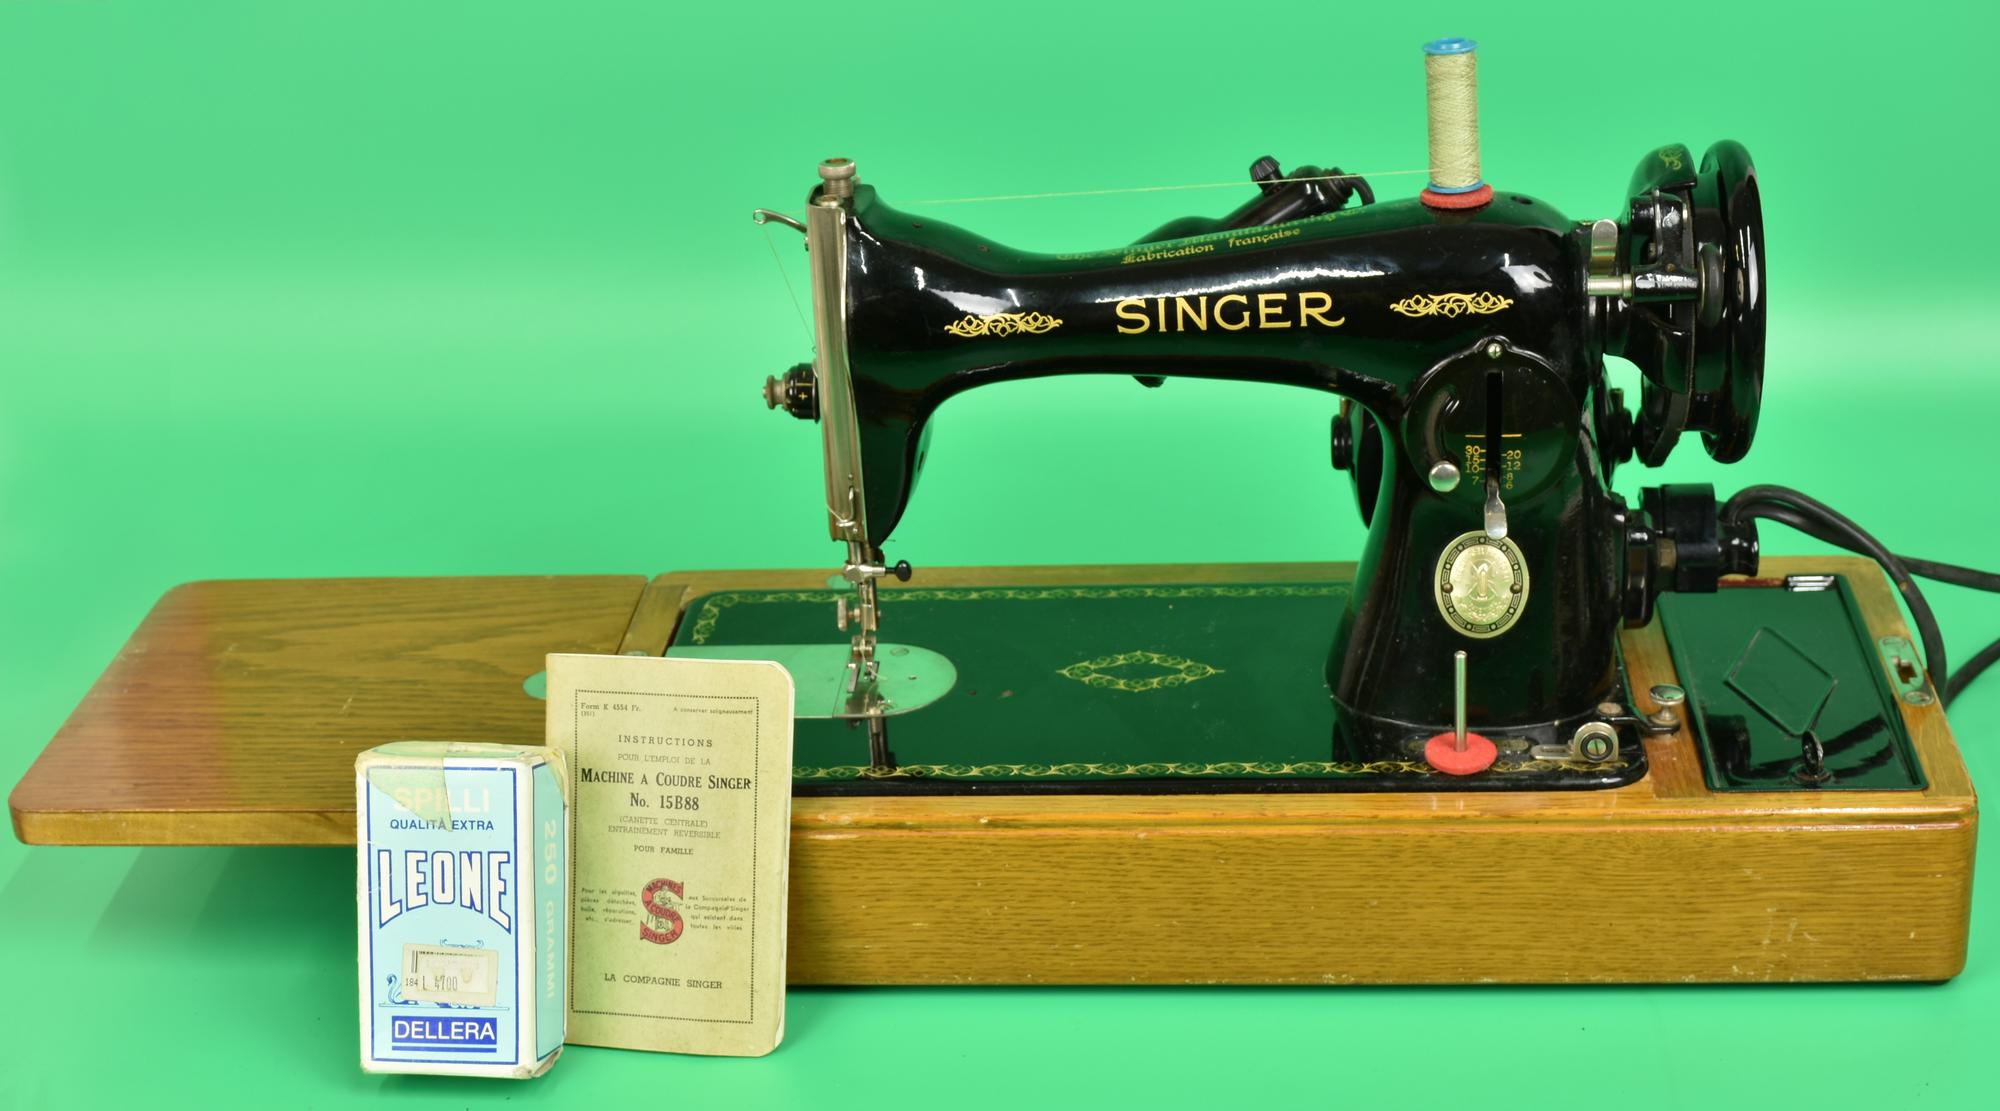 MACCHINA DA CUCIRE SINGER macchina da cucire marca Singer modello no.  15B88,, LIVEBID